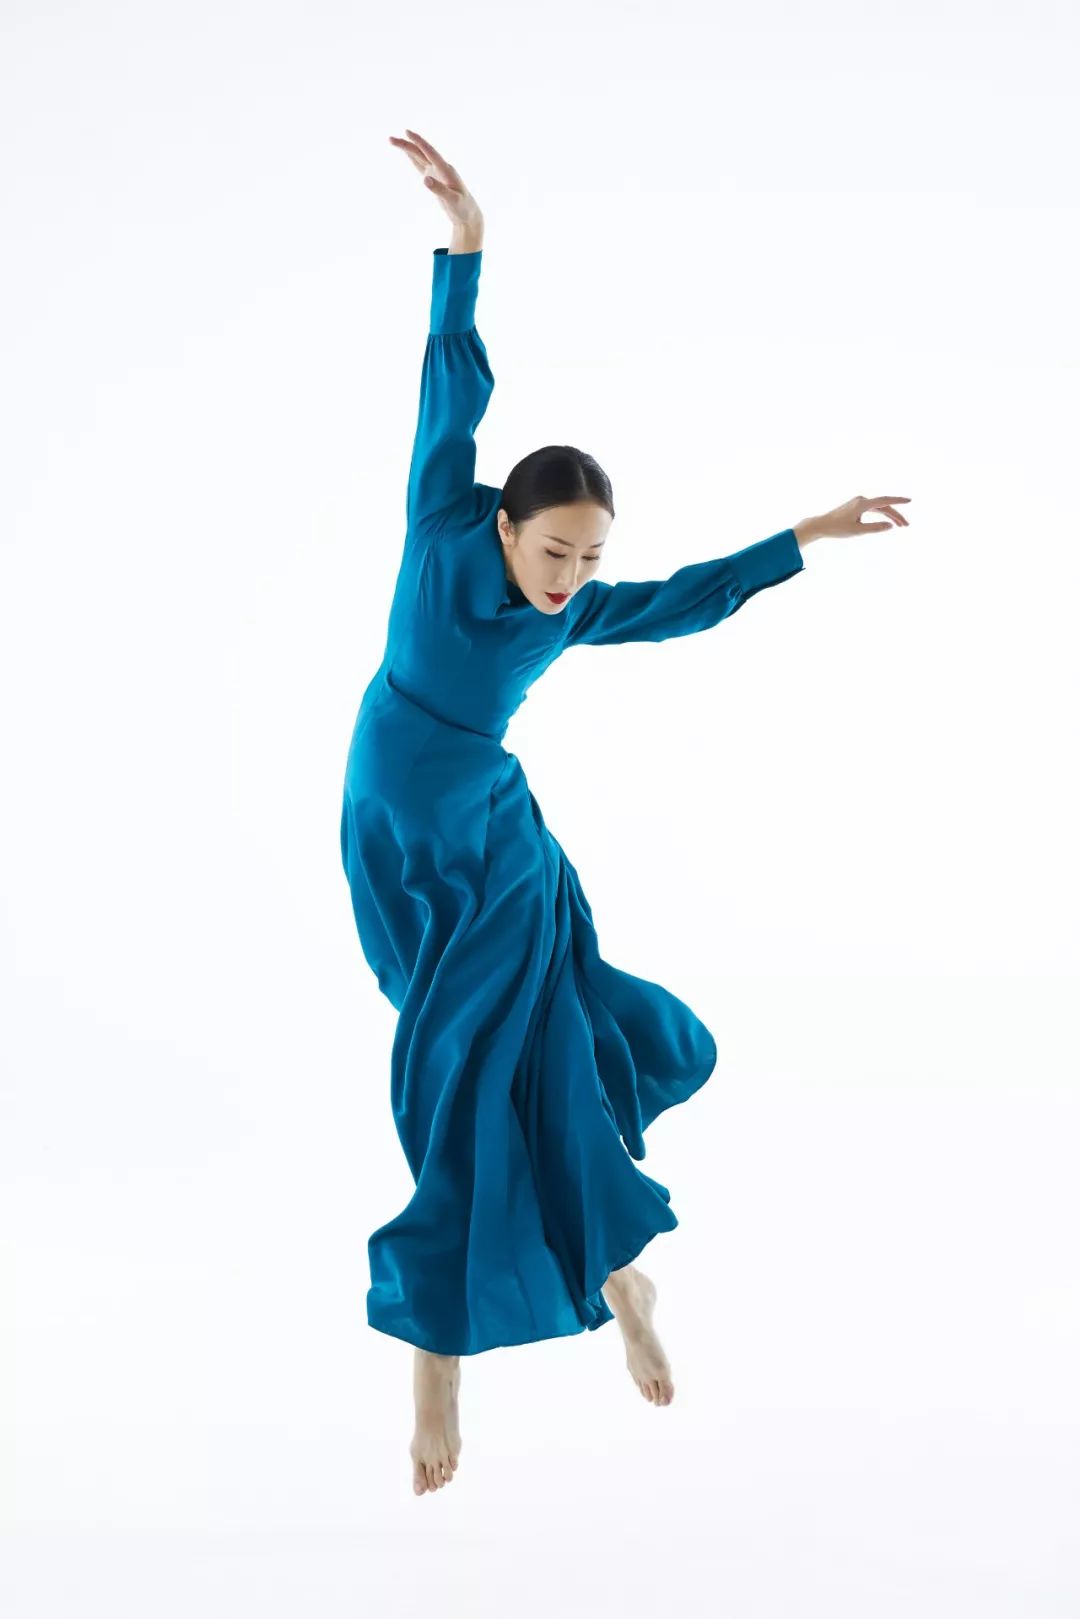 舞蹈演员张娅姝图片图片